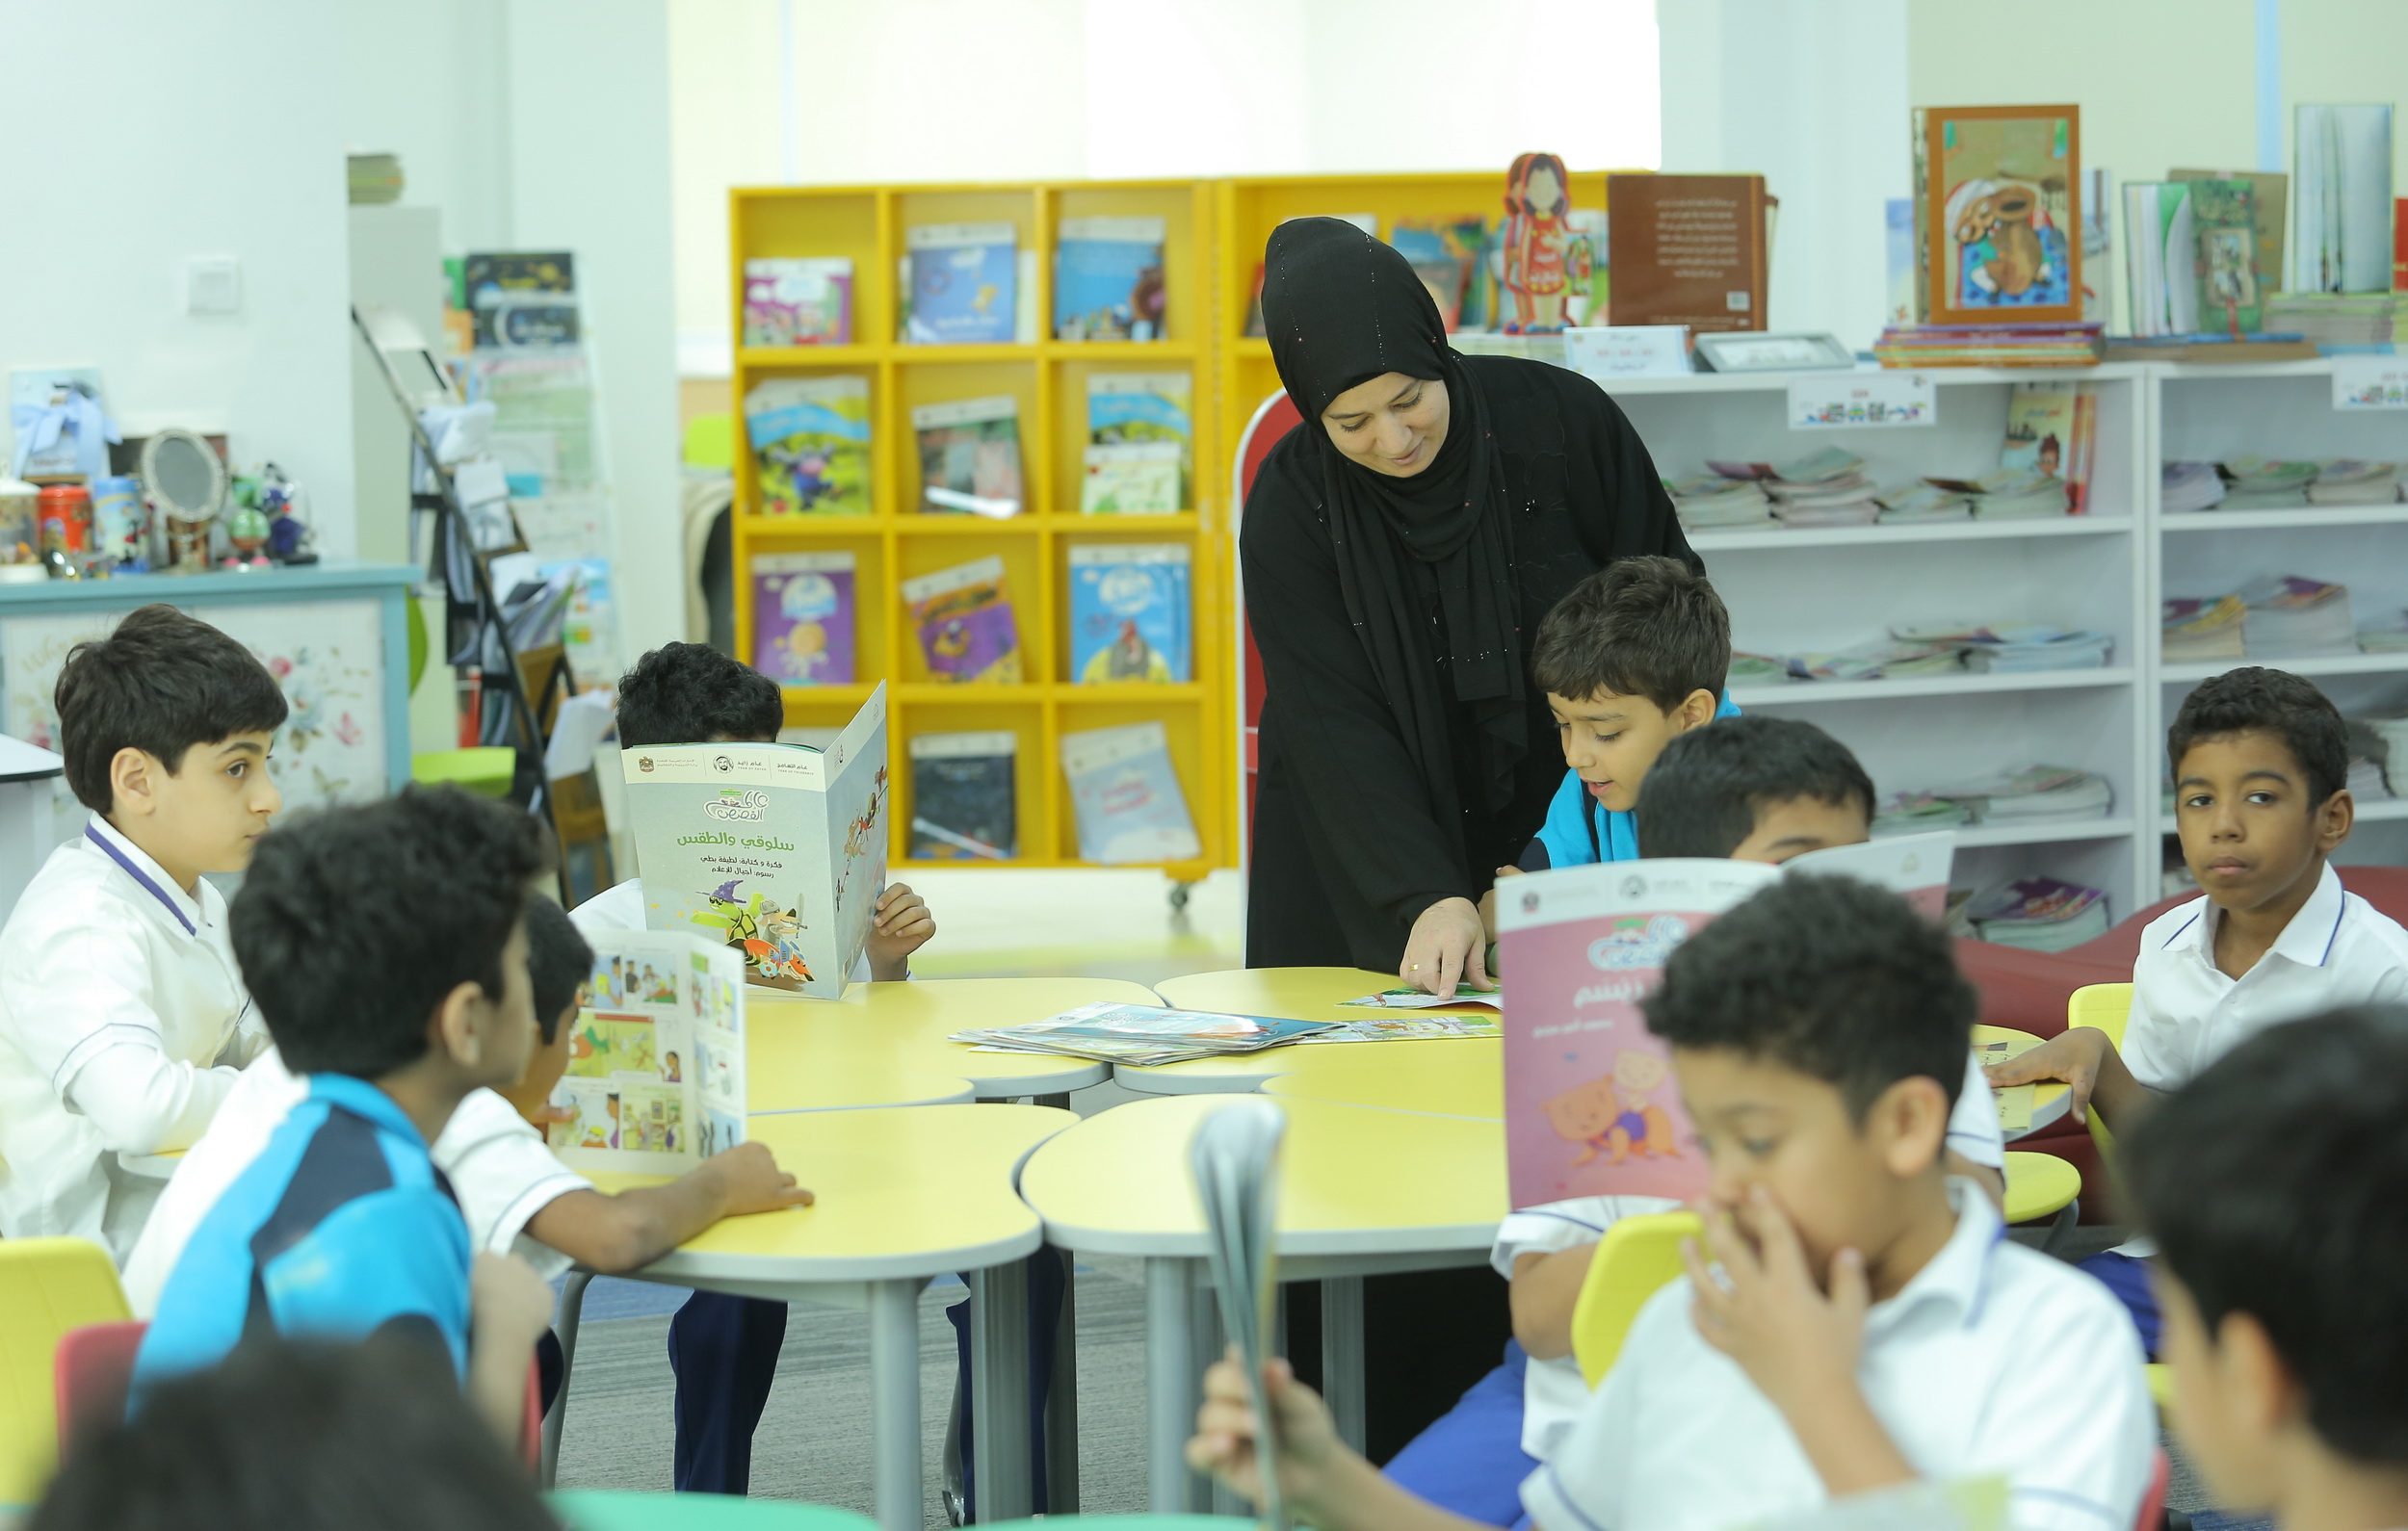 وزارة التربية والتعليم  تحدد 2 فبراير المقبل موعداً لتسجيل طلبة رياض الأطفال والصف الأول للعام الدراسي المقبل في دبي والمناطق الشمالية